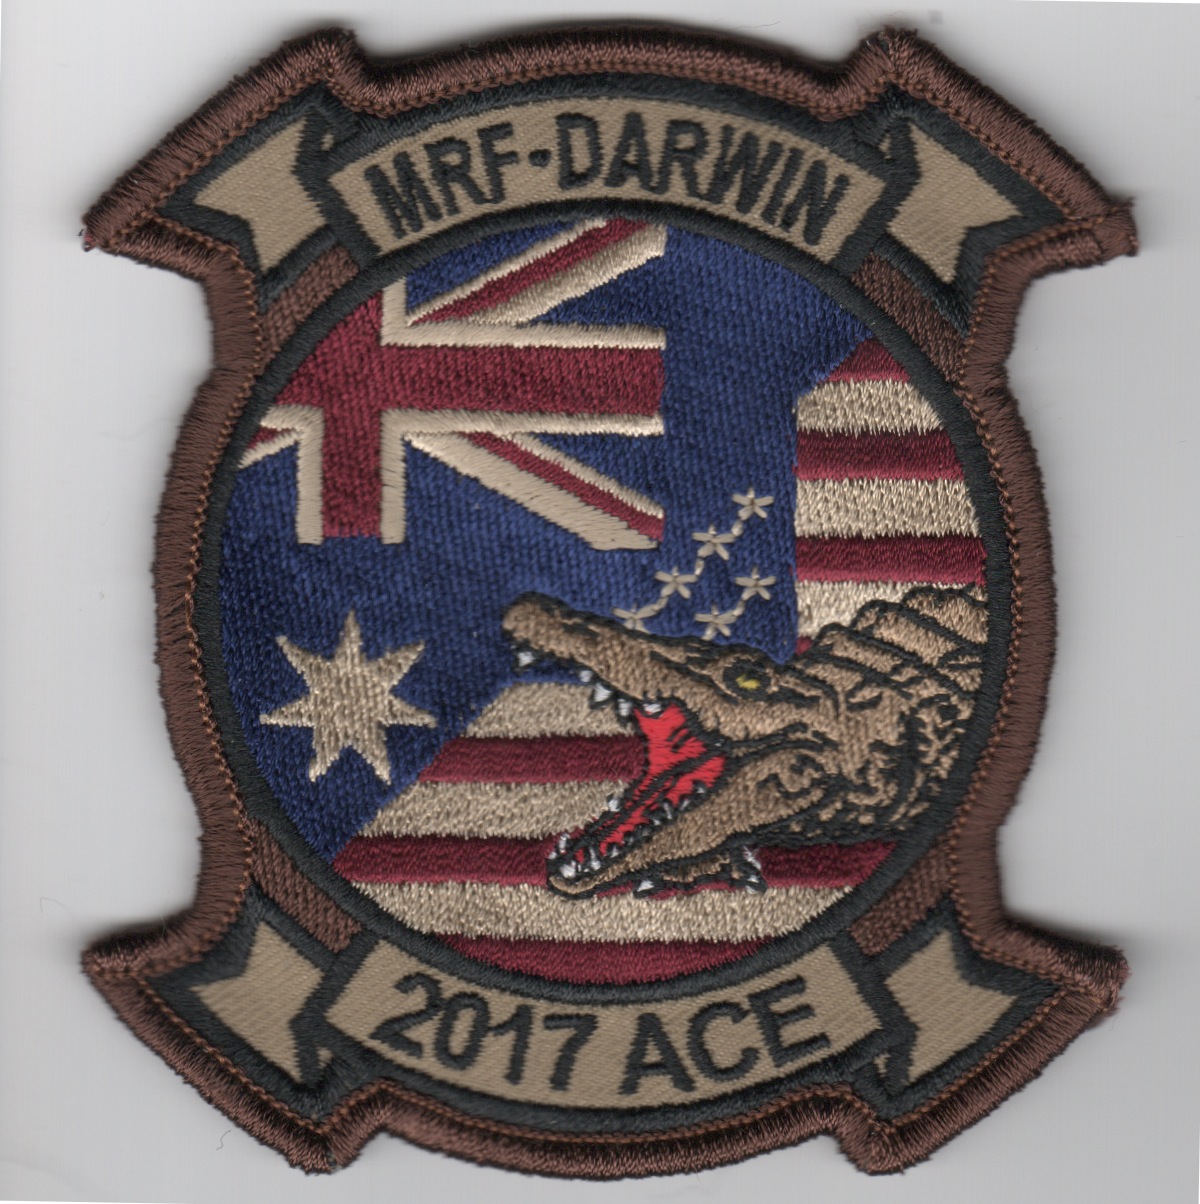 HMLA-367 'MRF-DARWIN' Patch (Blue Flag)